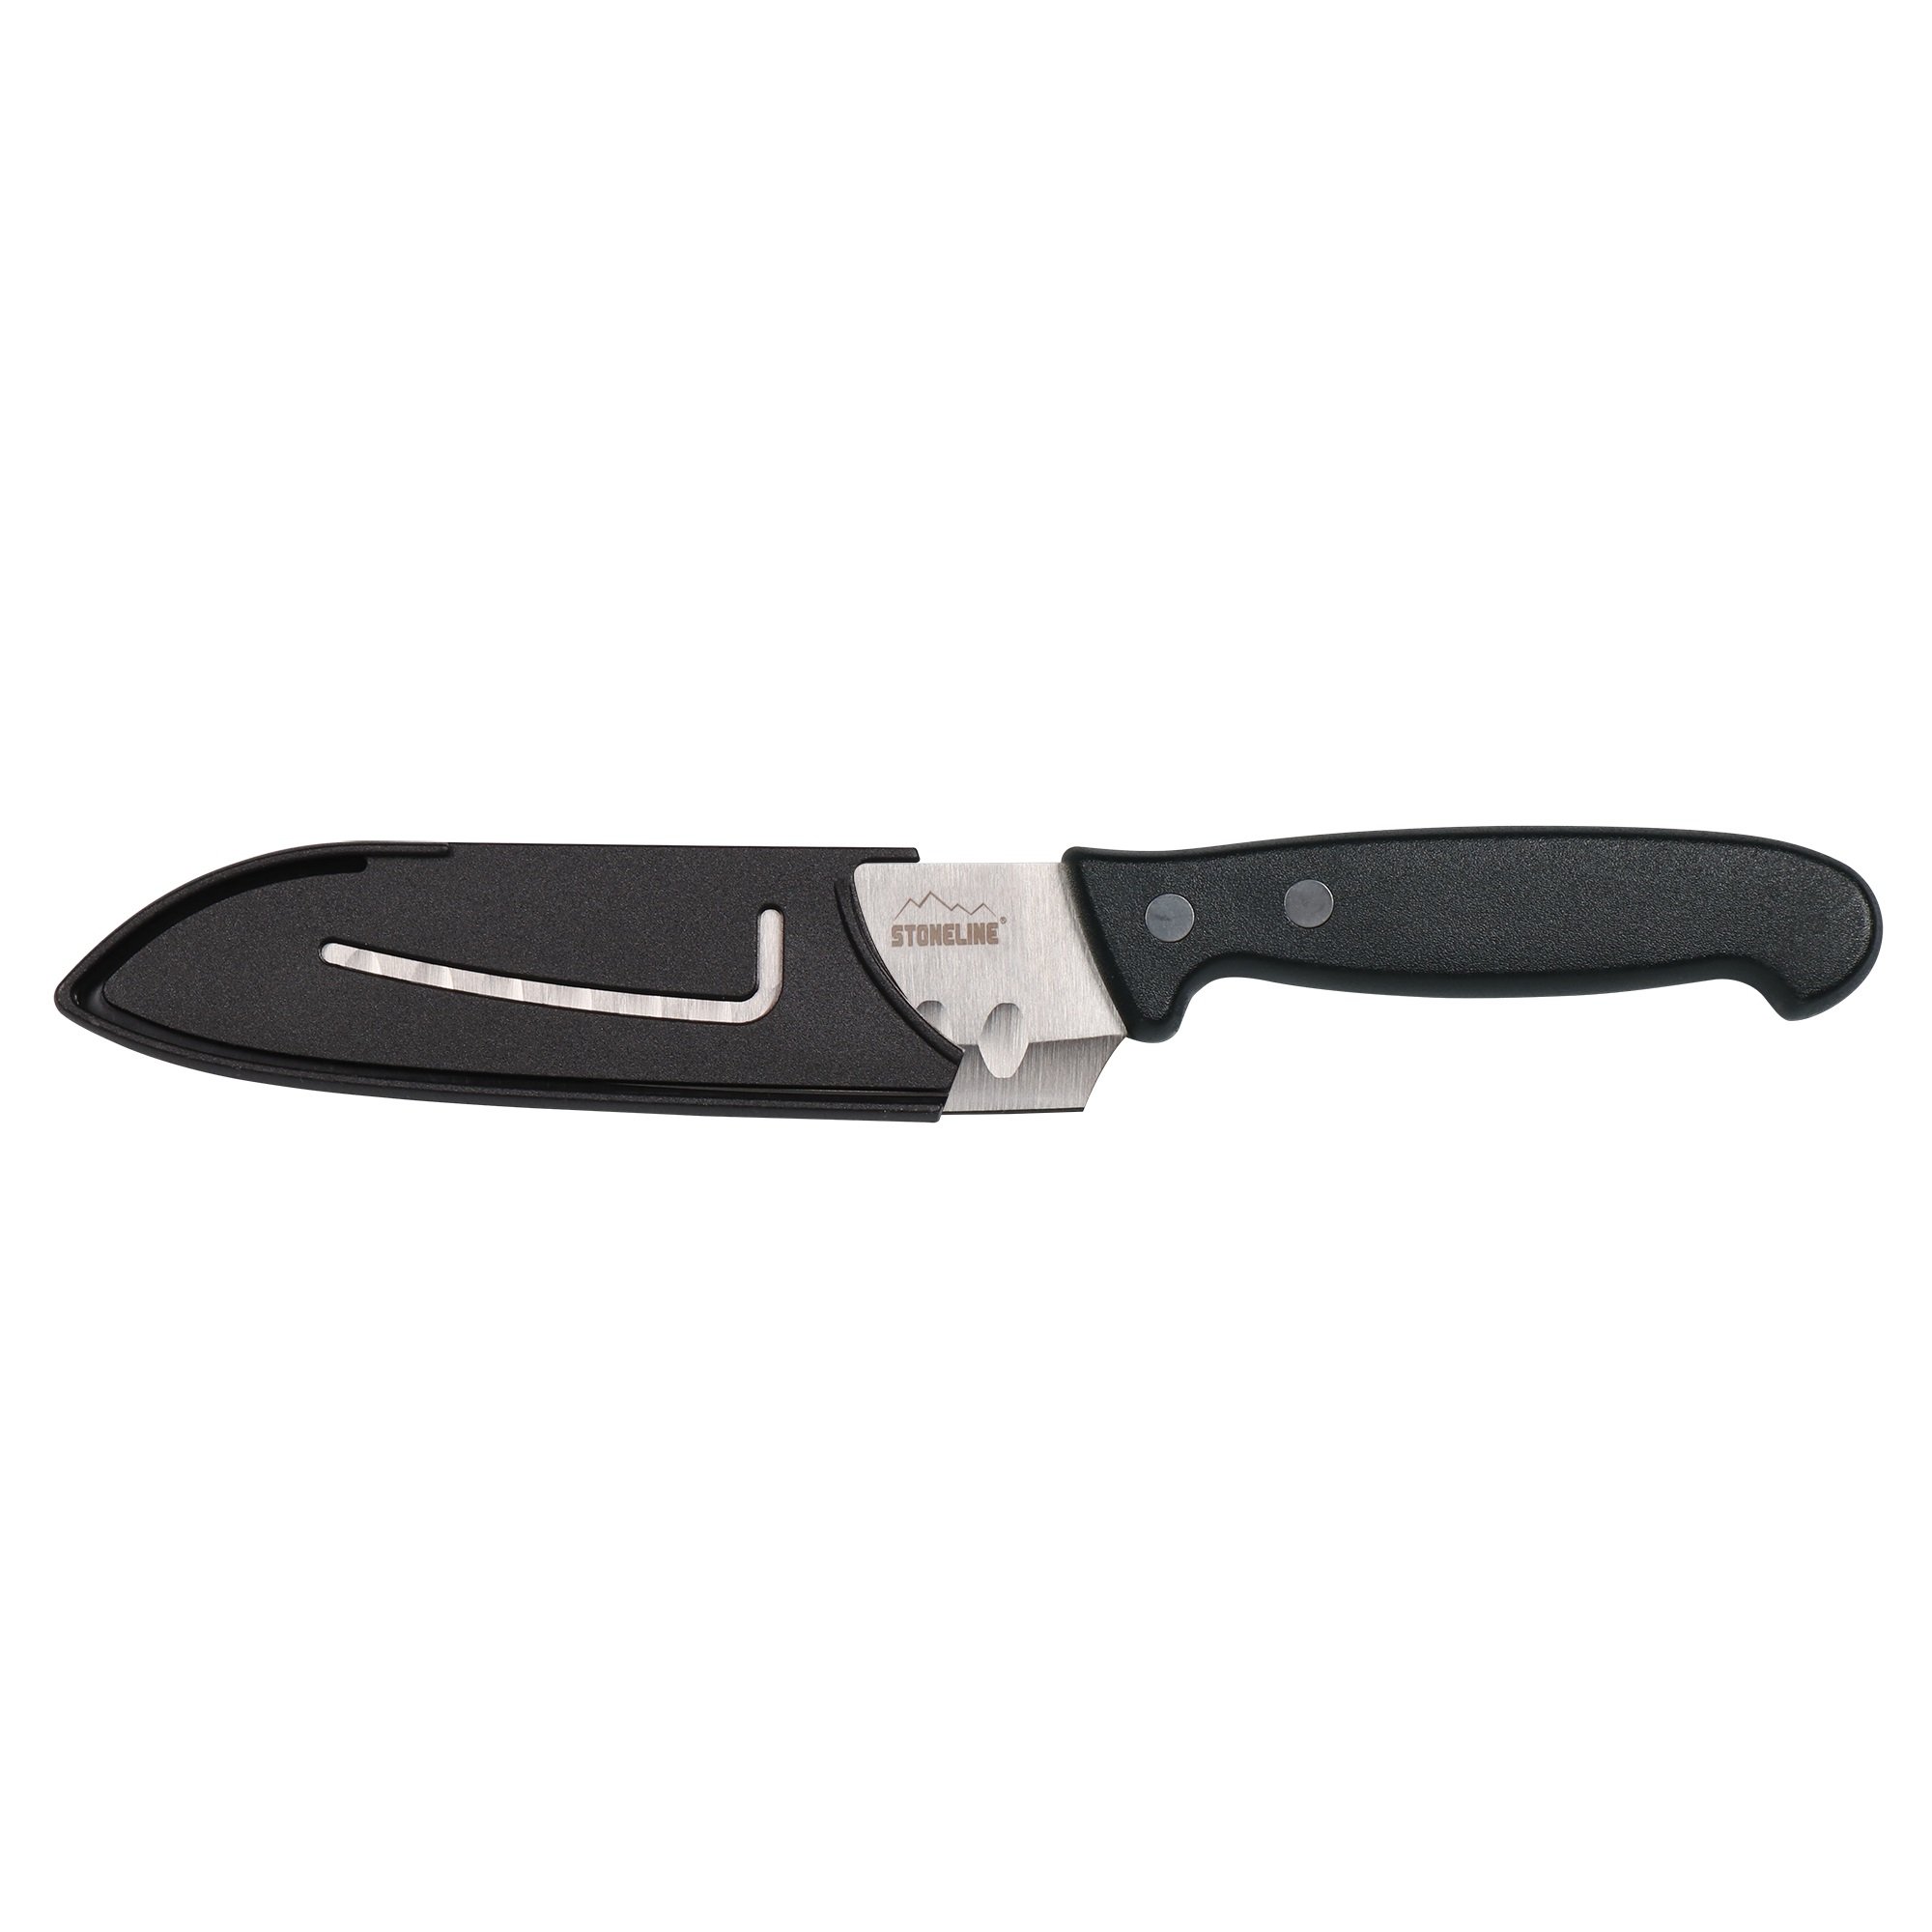 Cuchillo Santoku STONELINE® 22,6 cm, con protector de hoja